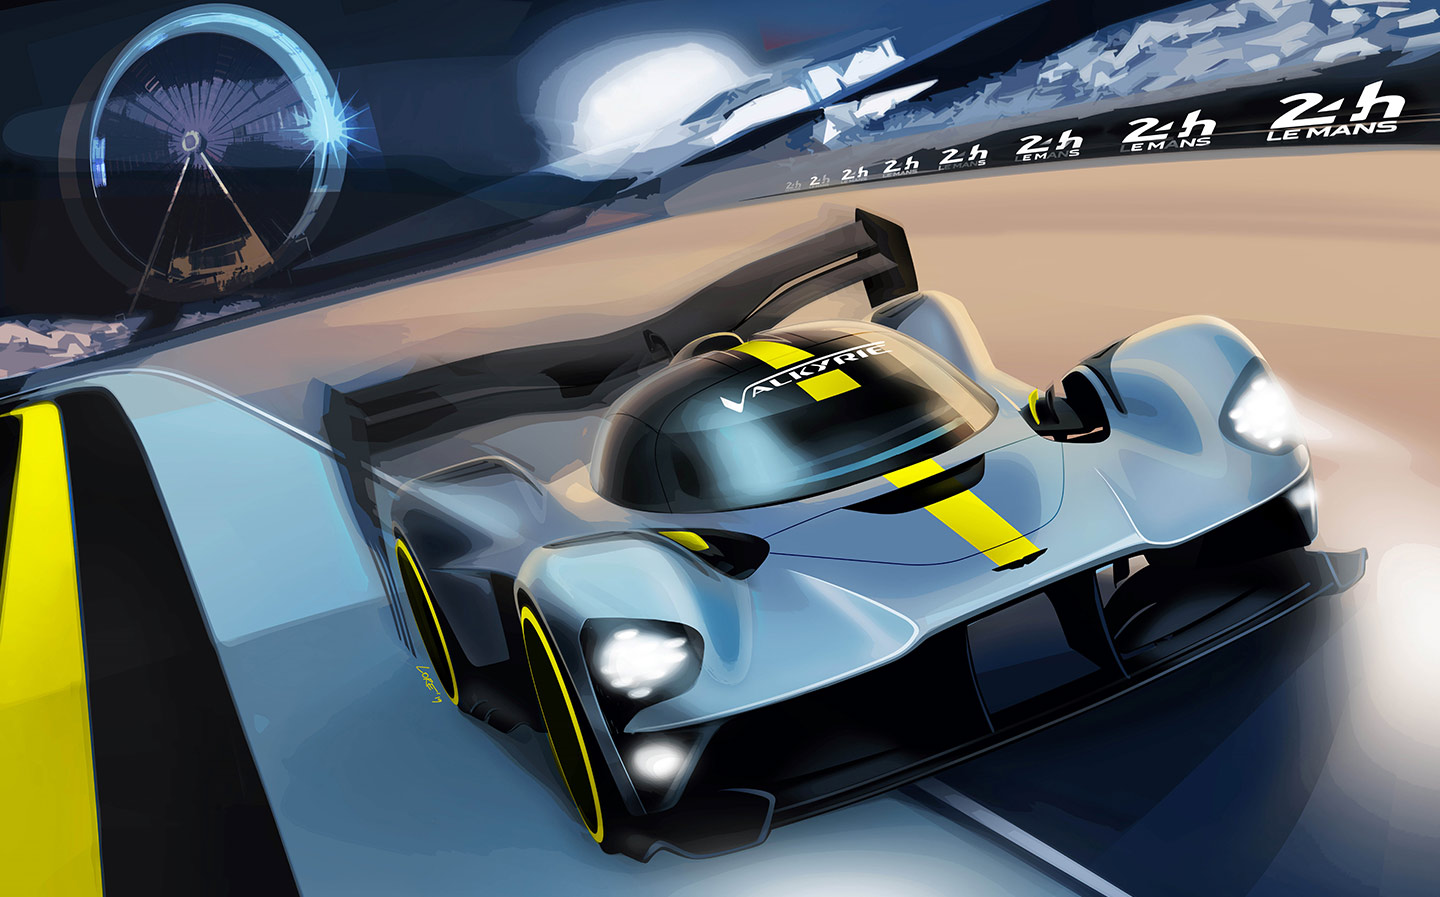 2020/21 Aston Martin Valkyrie Le Mans racing hyper car